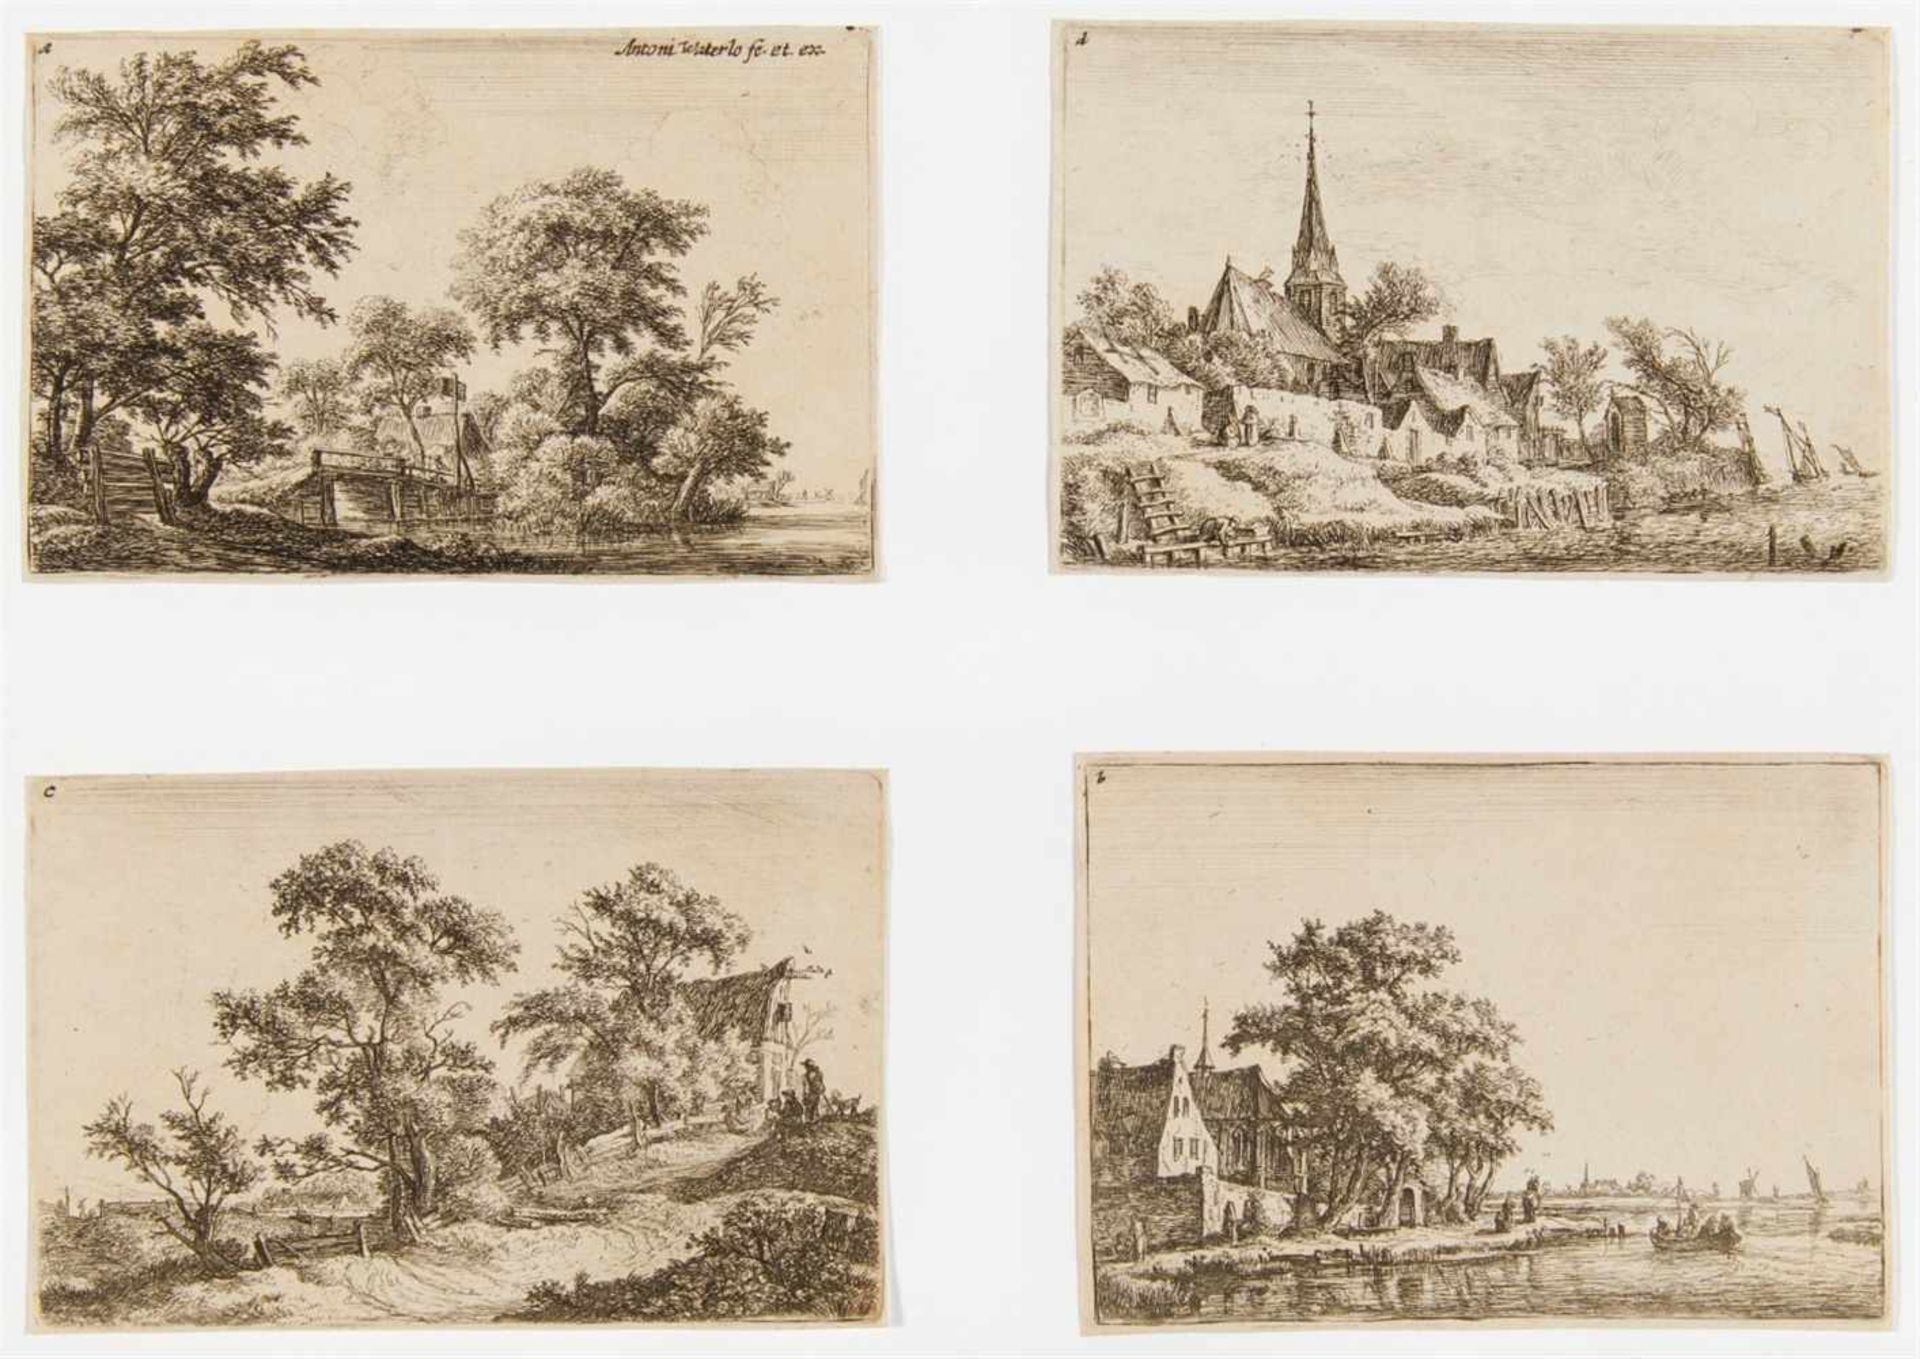 ANTONIE WATERLOOLille 1609 - 1690 Utrecht Landschaften.Komplette Folge von 12 Blatt Radierungen